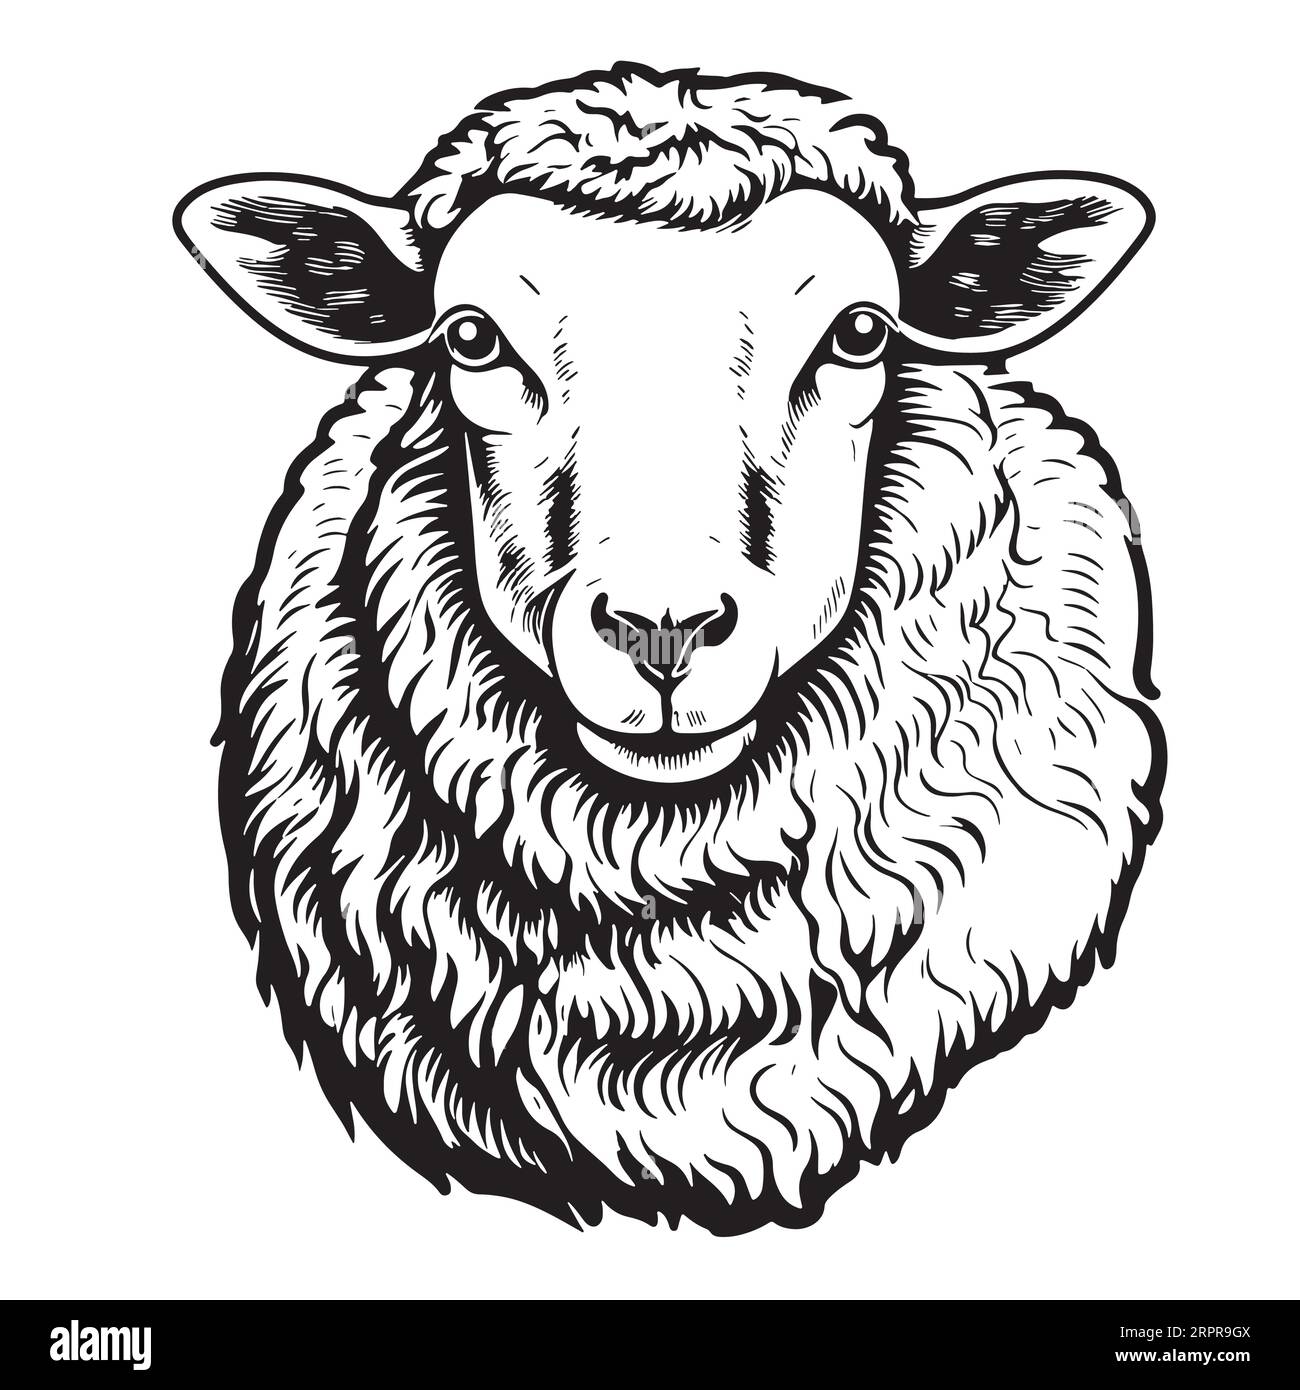 Mountain sheep face hand drawn sketch Vector Stock Vector